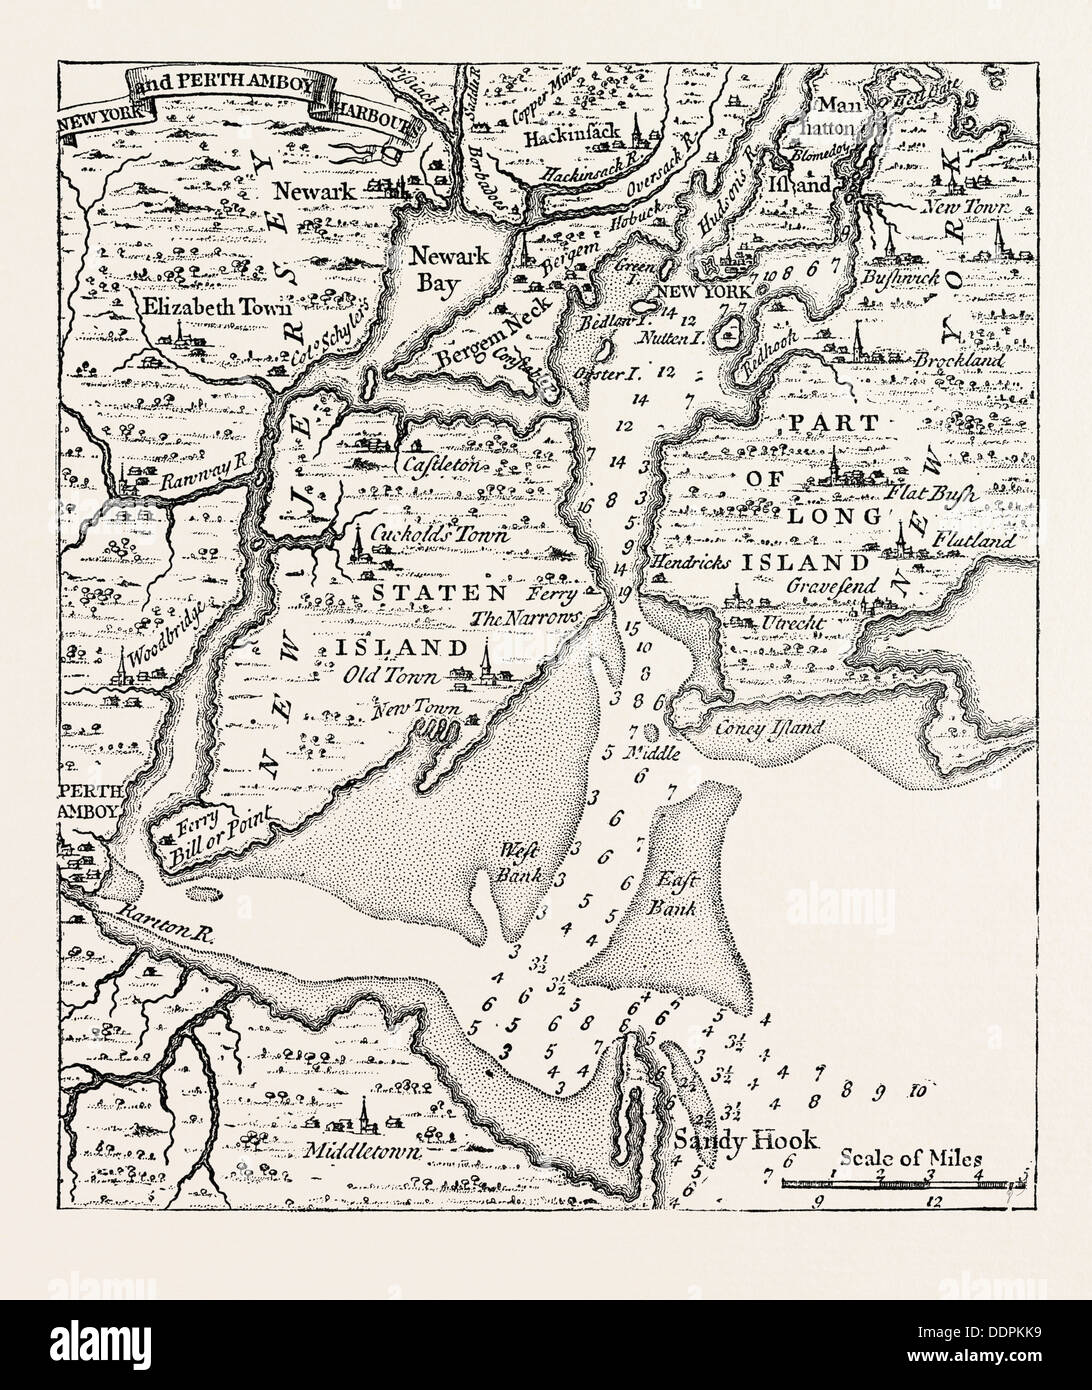 Karte von NEW YORK über die Mitte des achtzehnten Jahrhunderts, vom Popple Atlas, Vereinigte Staaten von Amerika, US, USA, der 1870er Jahre Stockfoto